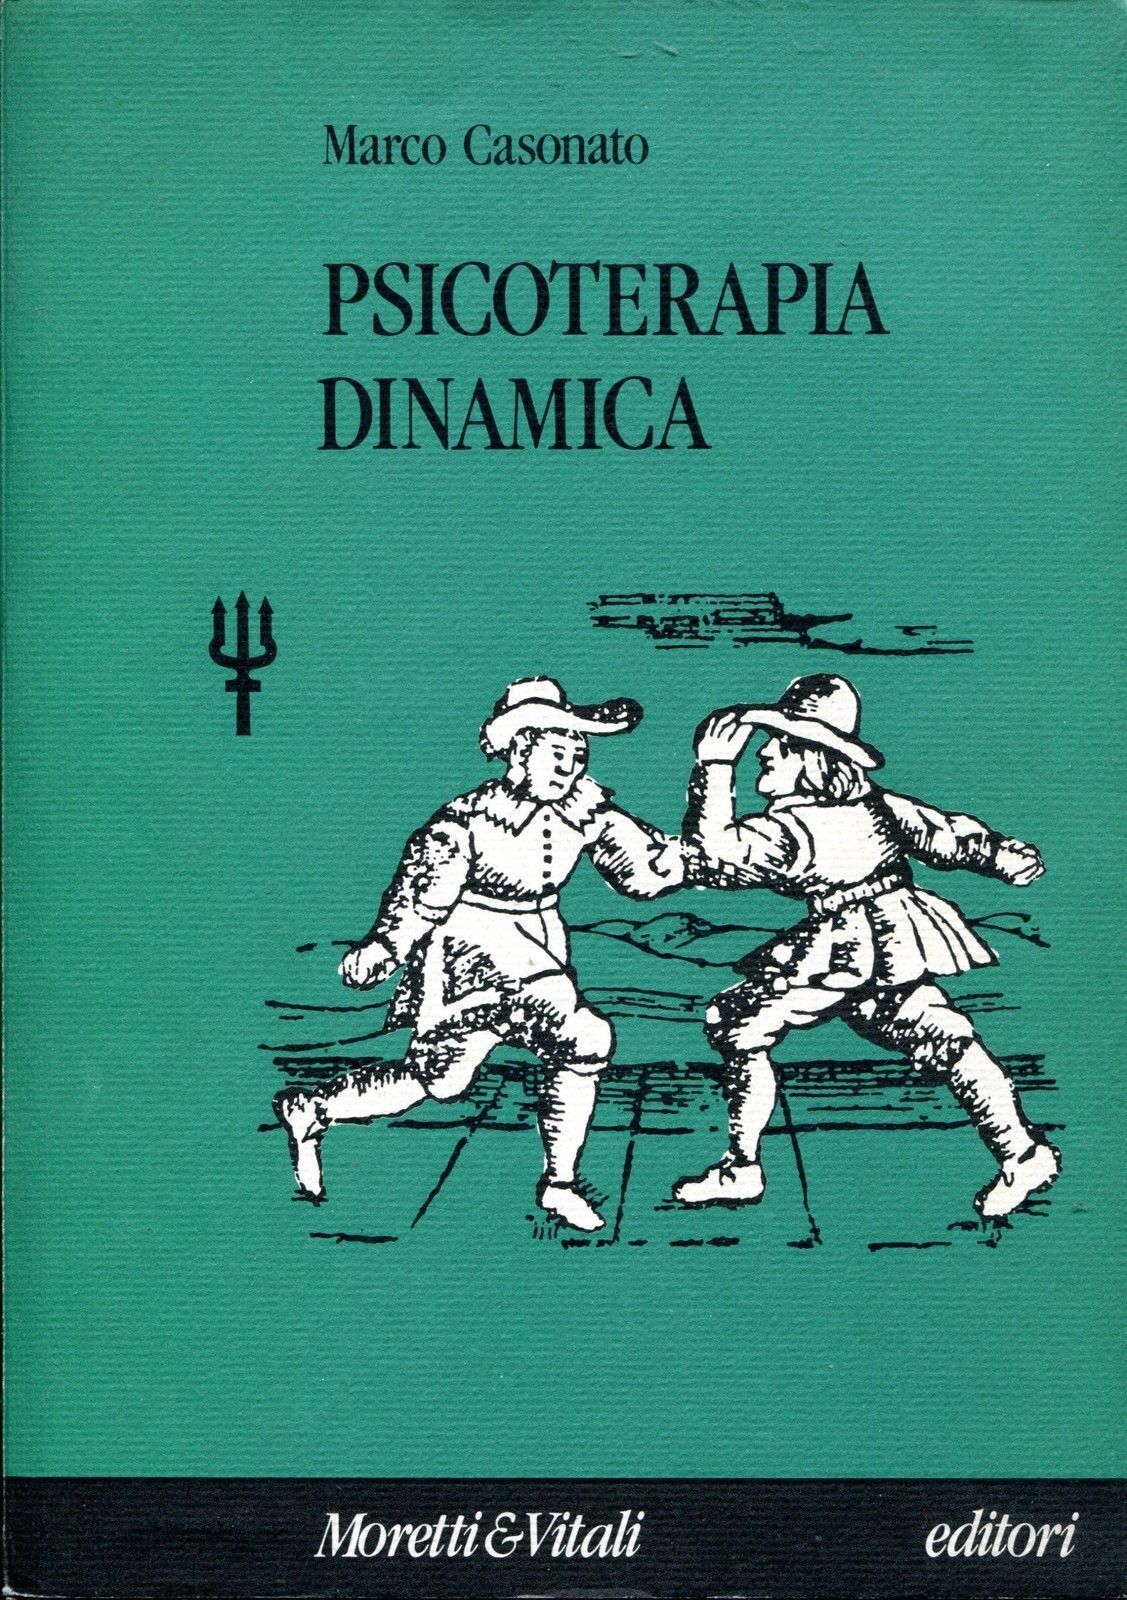 MARCO CASONATO - PSICOTERAPIA DINAMICA - MORETTI & VITALI, 1991 